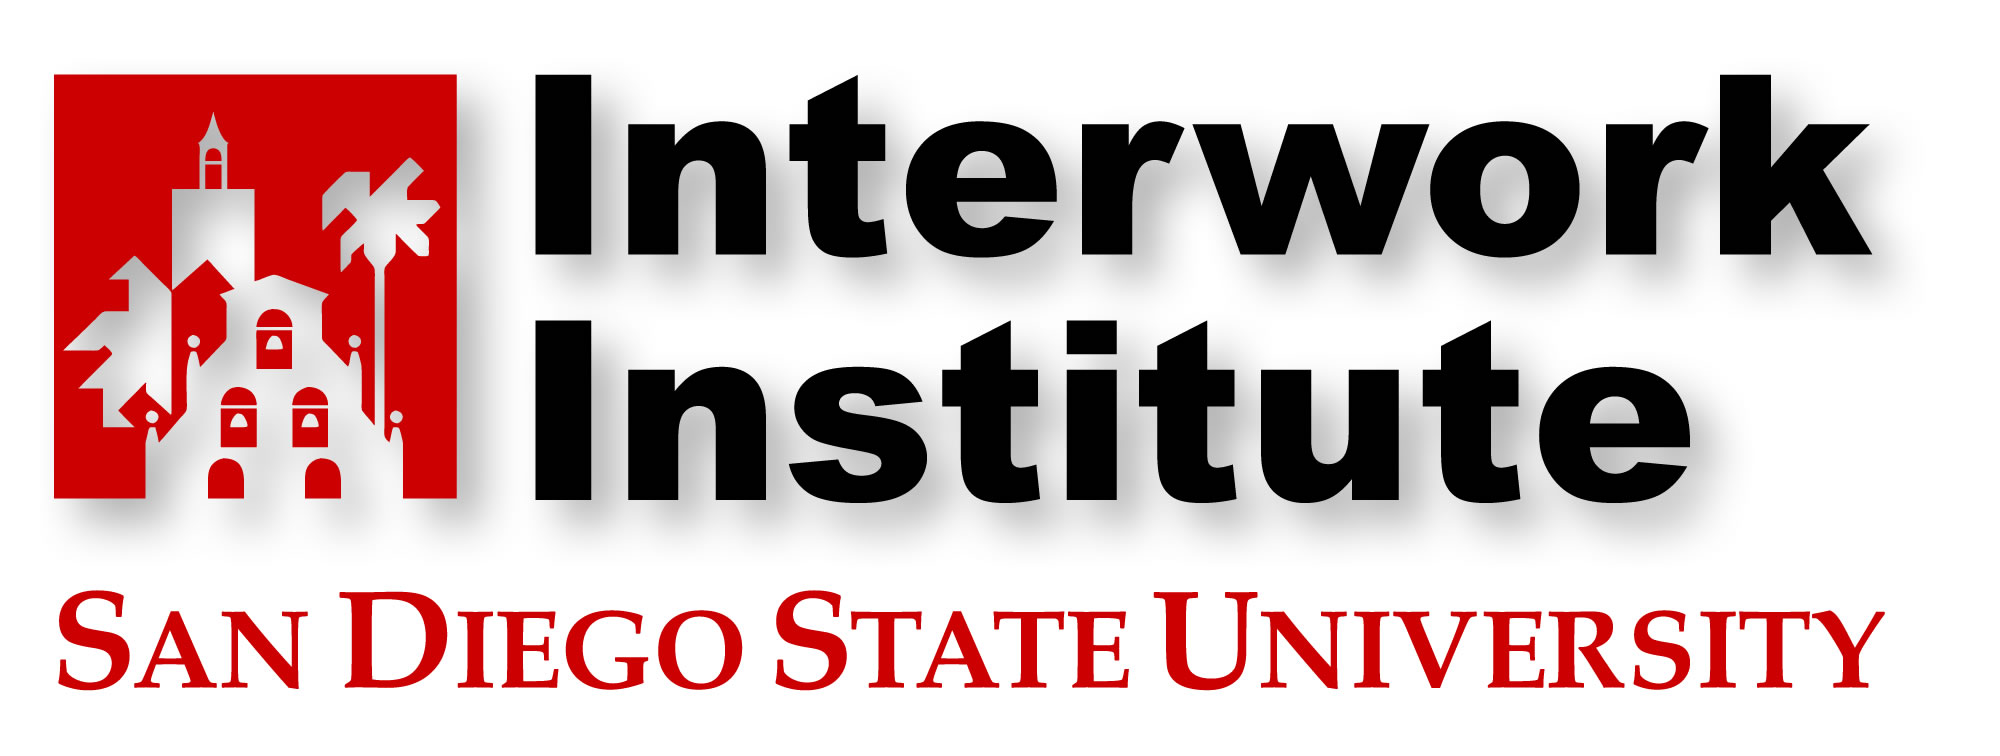 Interwork Institute